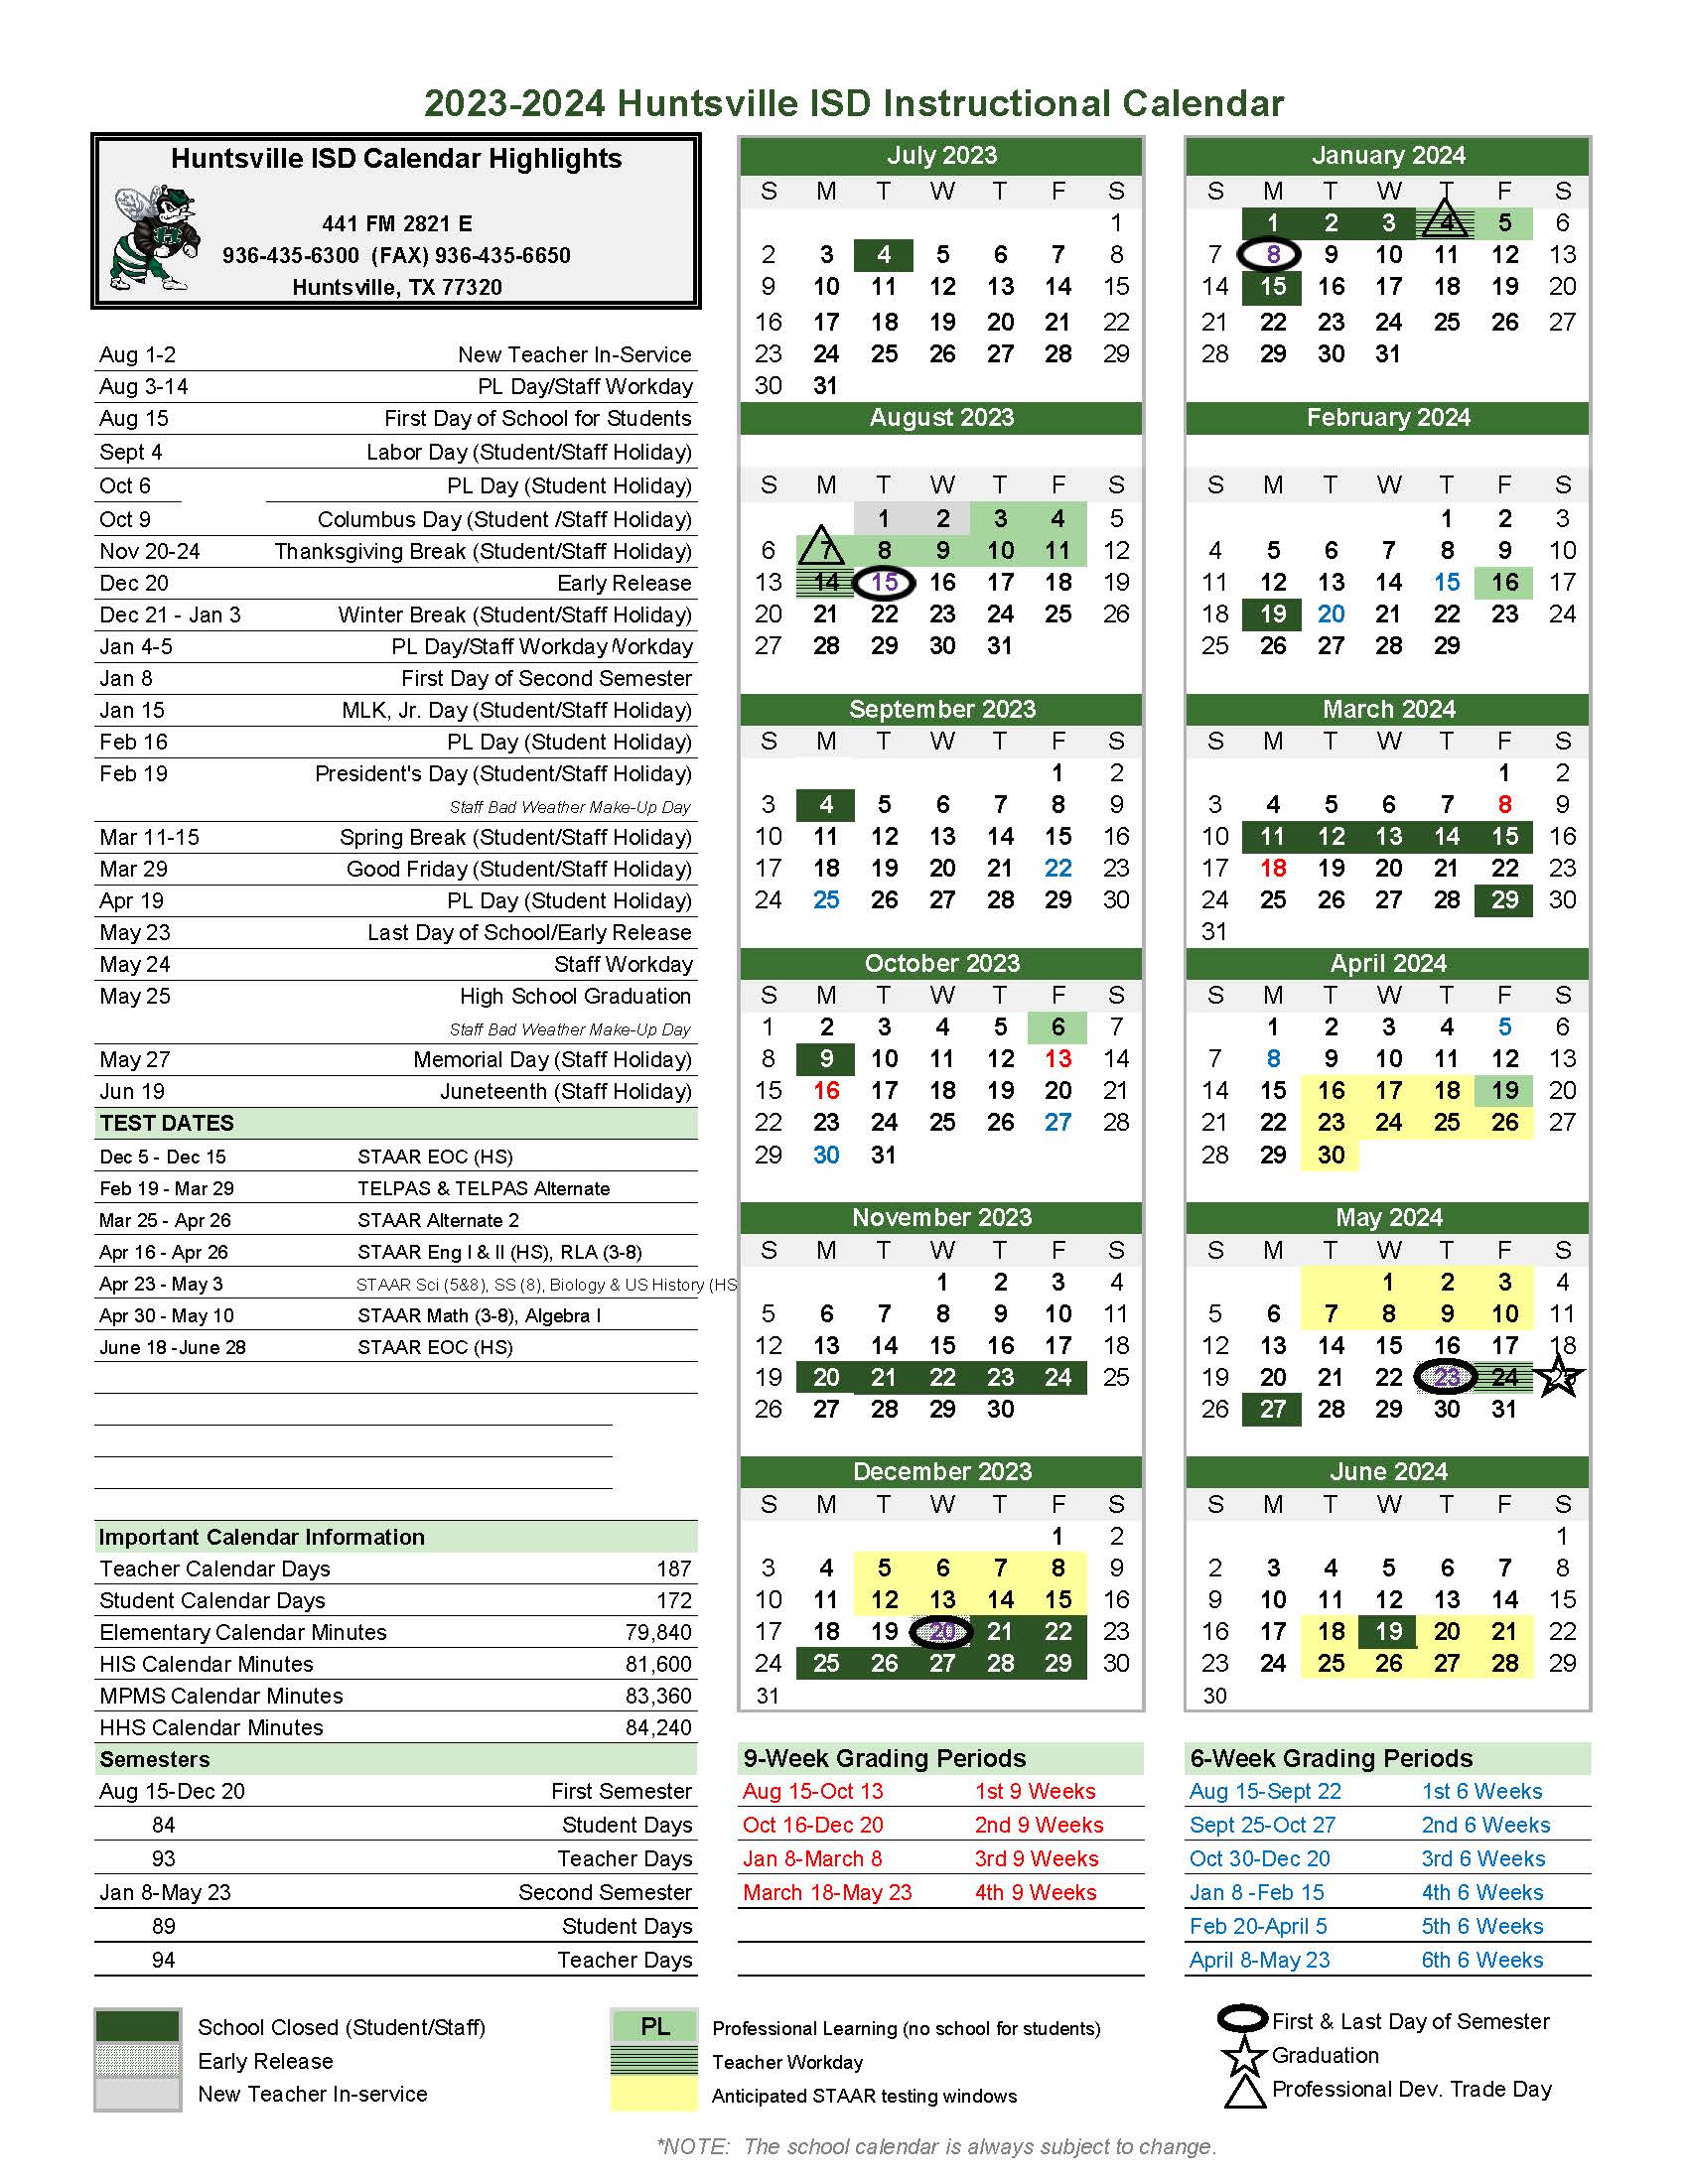 academic calendar for 2023-2024